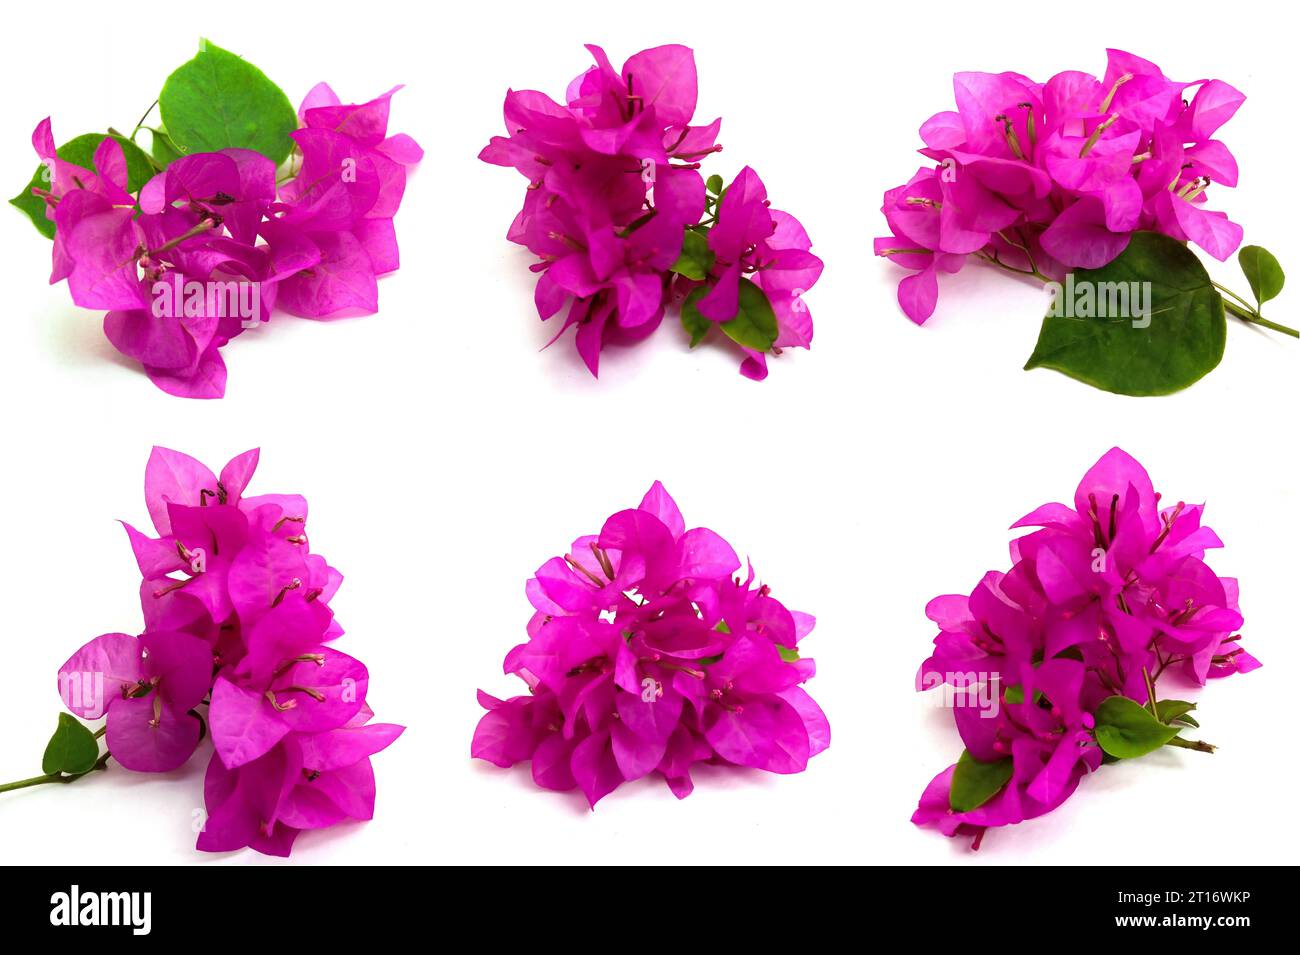 Satz rosa Bougainvillea Blumen auf weißem Hintergrund. Fotos aus verschiedenen Richtungen. Dieses Asset eignet sich sehr gut für die Gestaltung von naturbelassenen DE Stockfoto